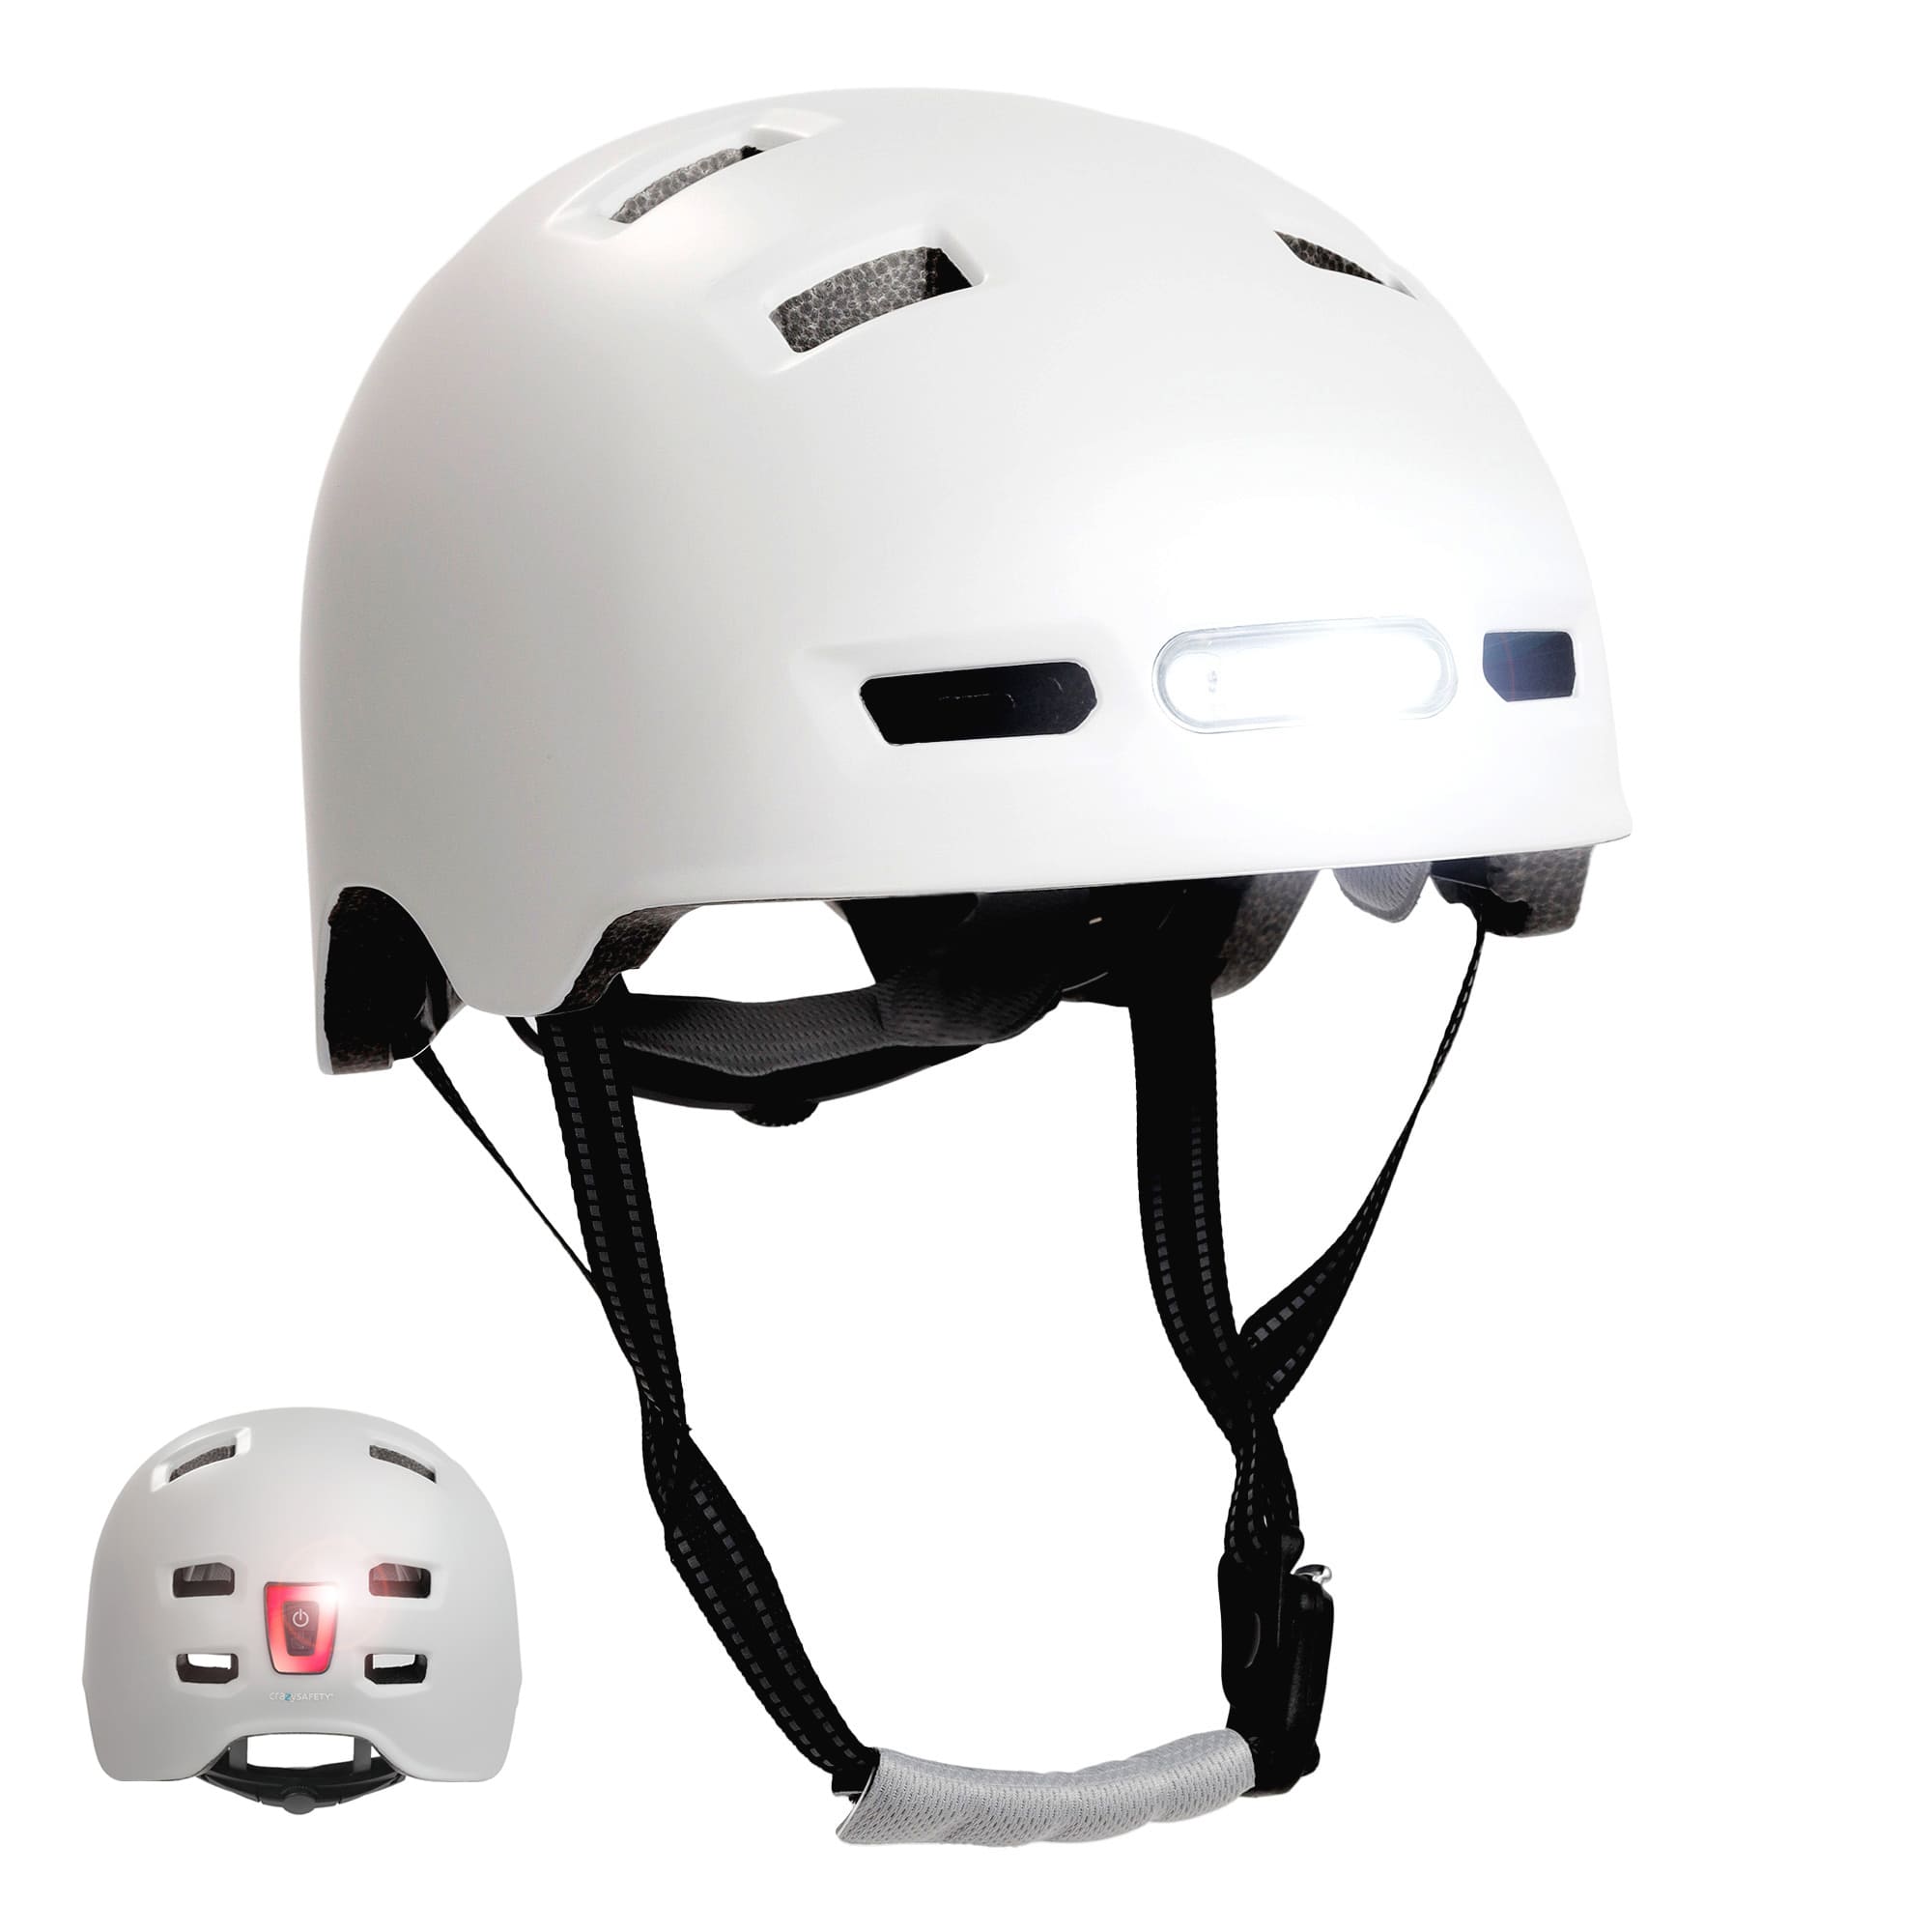 Se Mat hvid urban cykel- og skaterhjelm, størrelse M 54-57cm, til teenagere og voksne, Crazy Safety-hjelm med kraftig for- og baglygter. Godkendt og EN1078-certificeret. hos Crazy Safety